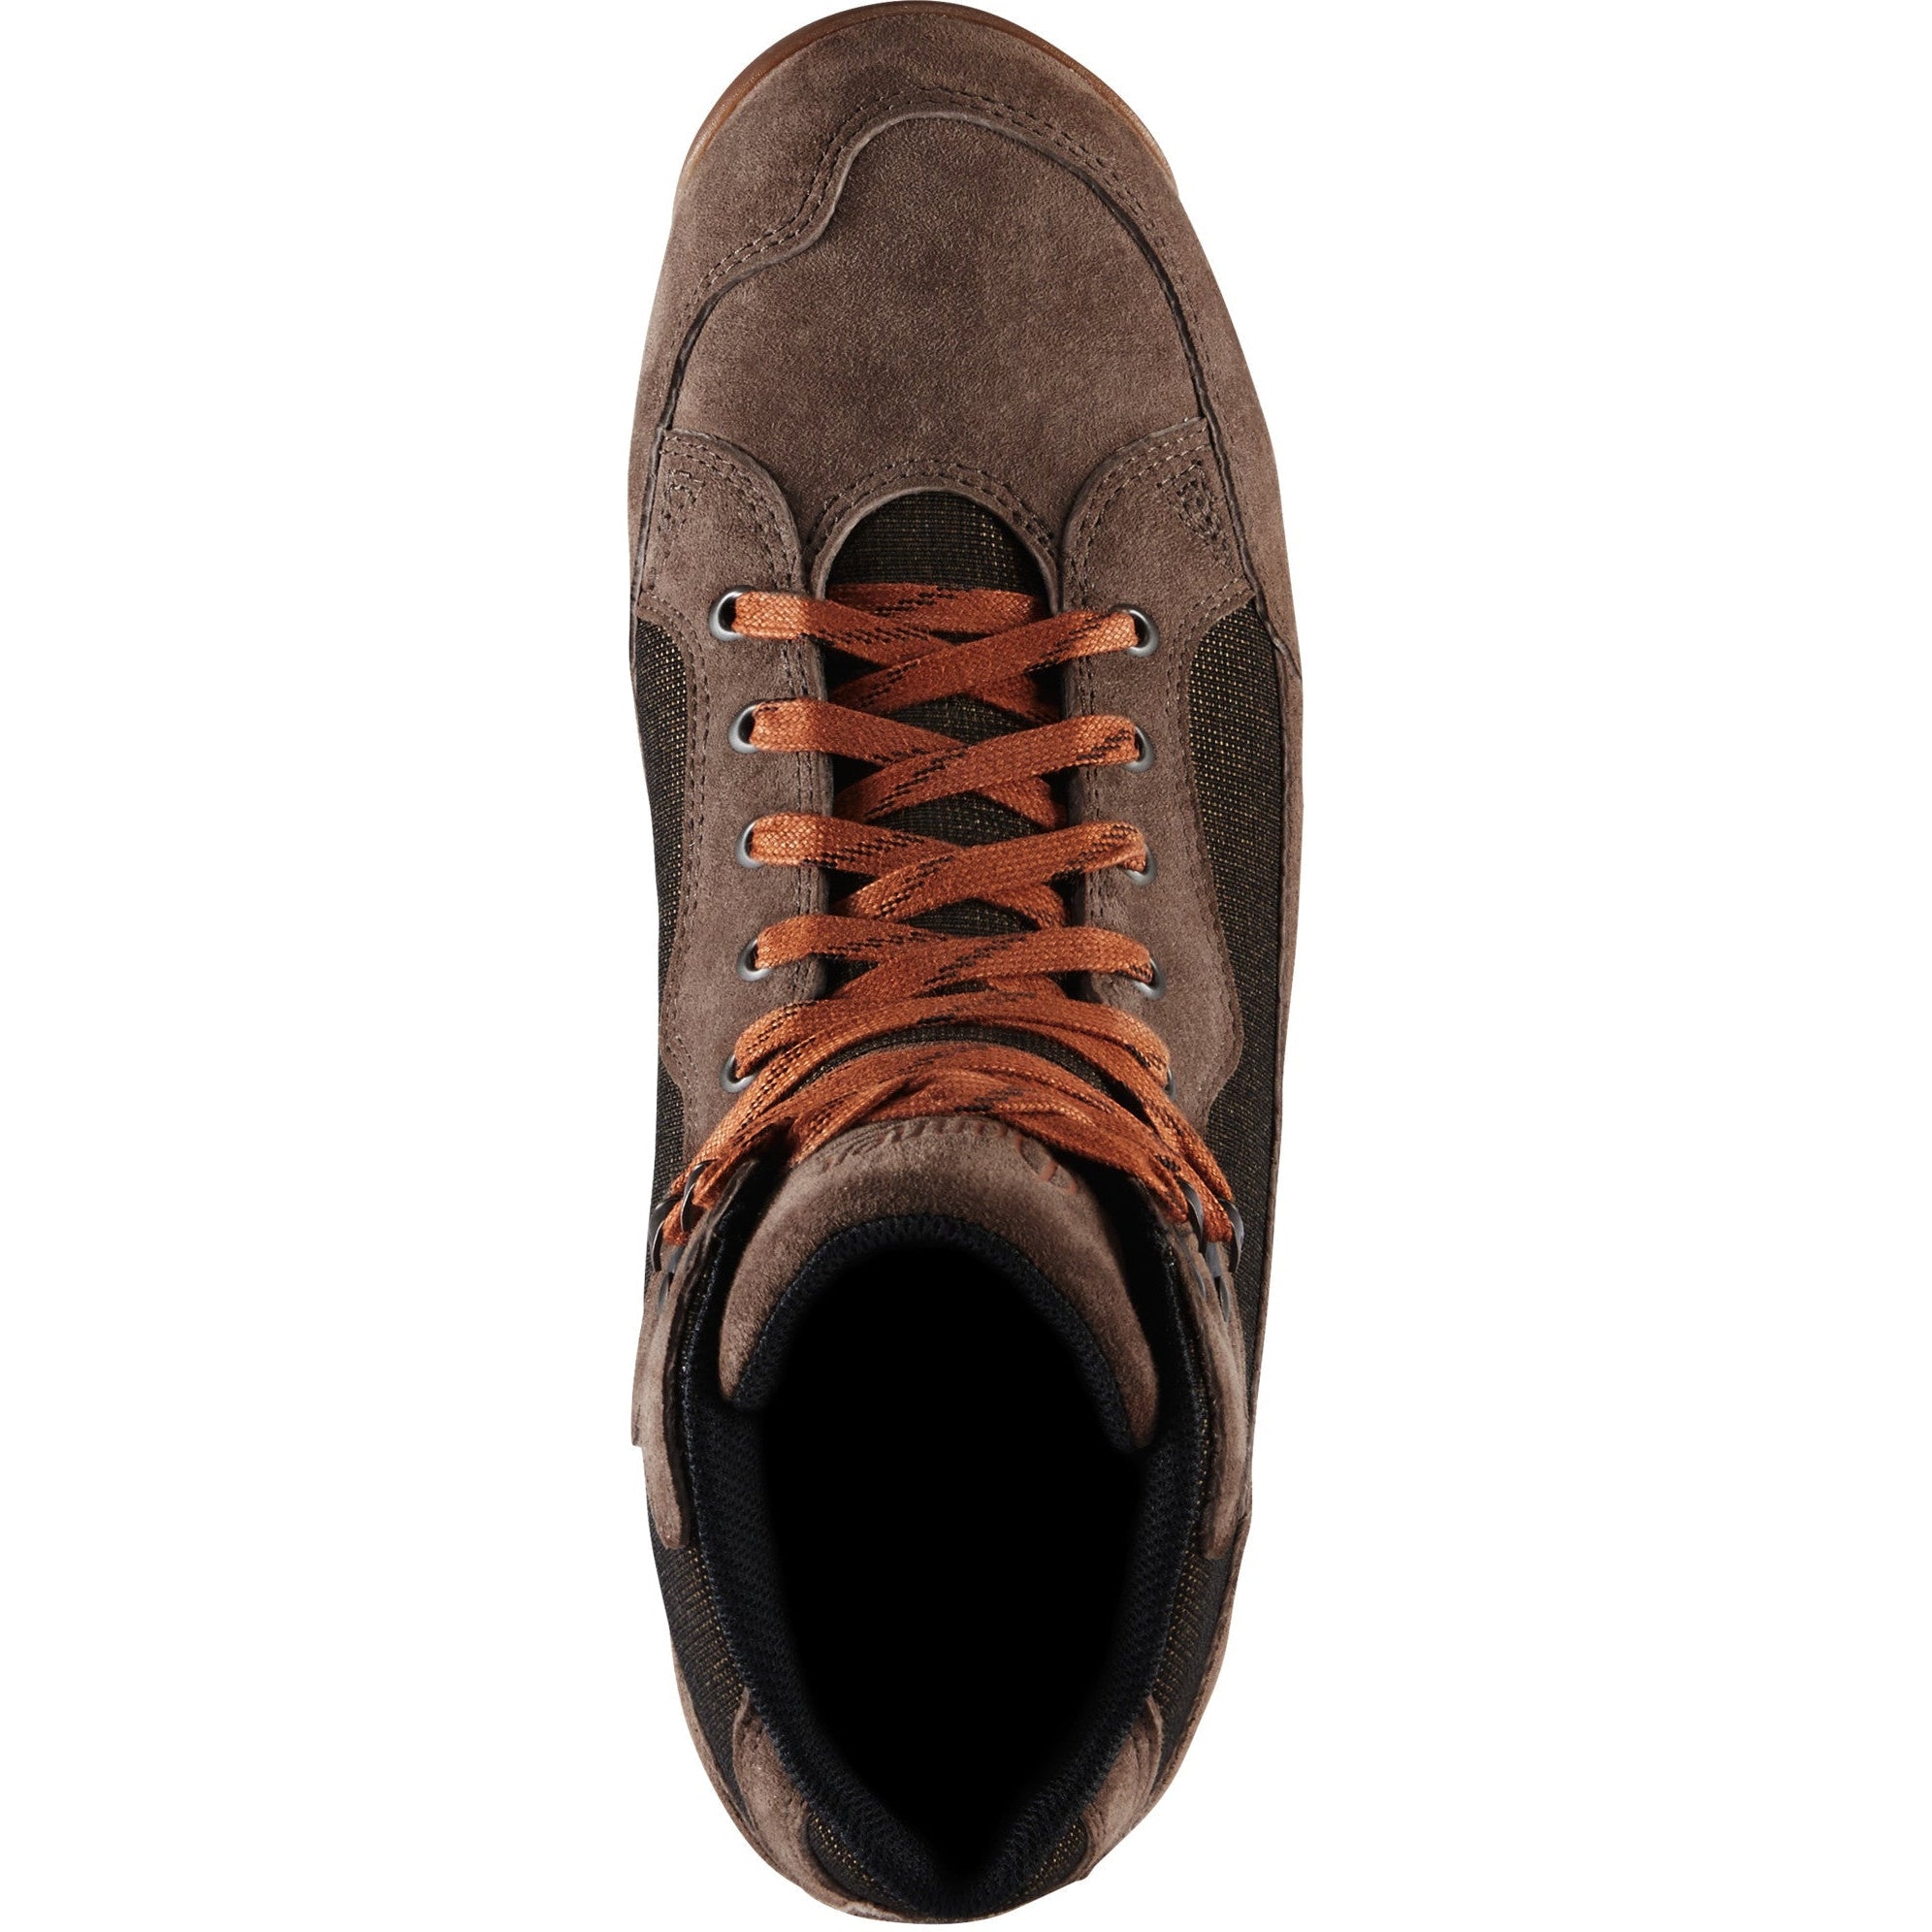 Danner Men's Skyridge 4.5" WP Hiking Shoe - Dark Earth - 30162  - Overlook Boots